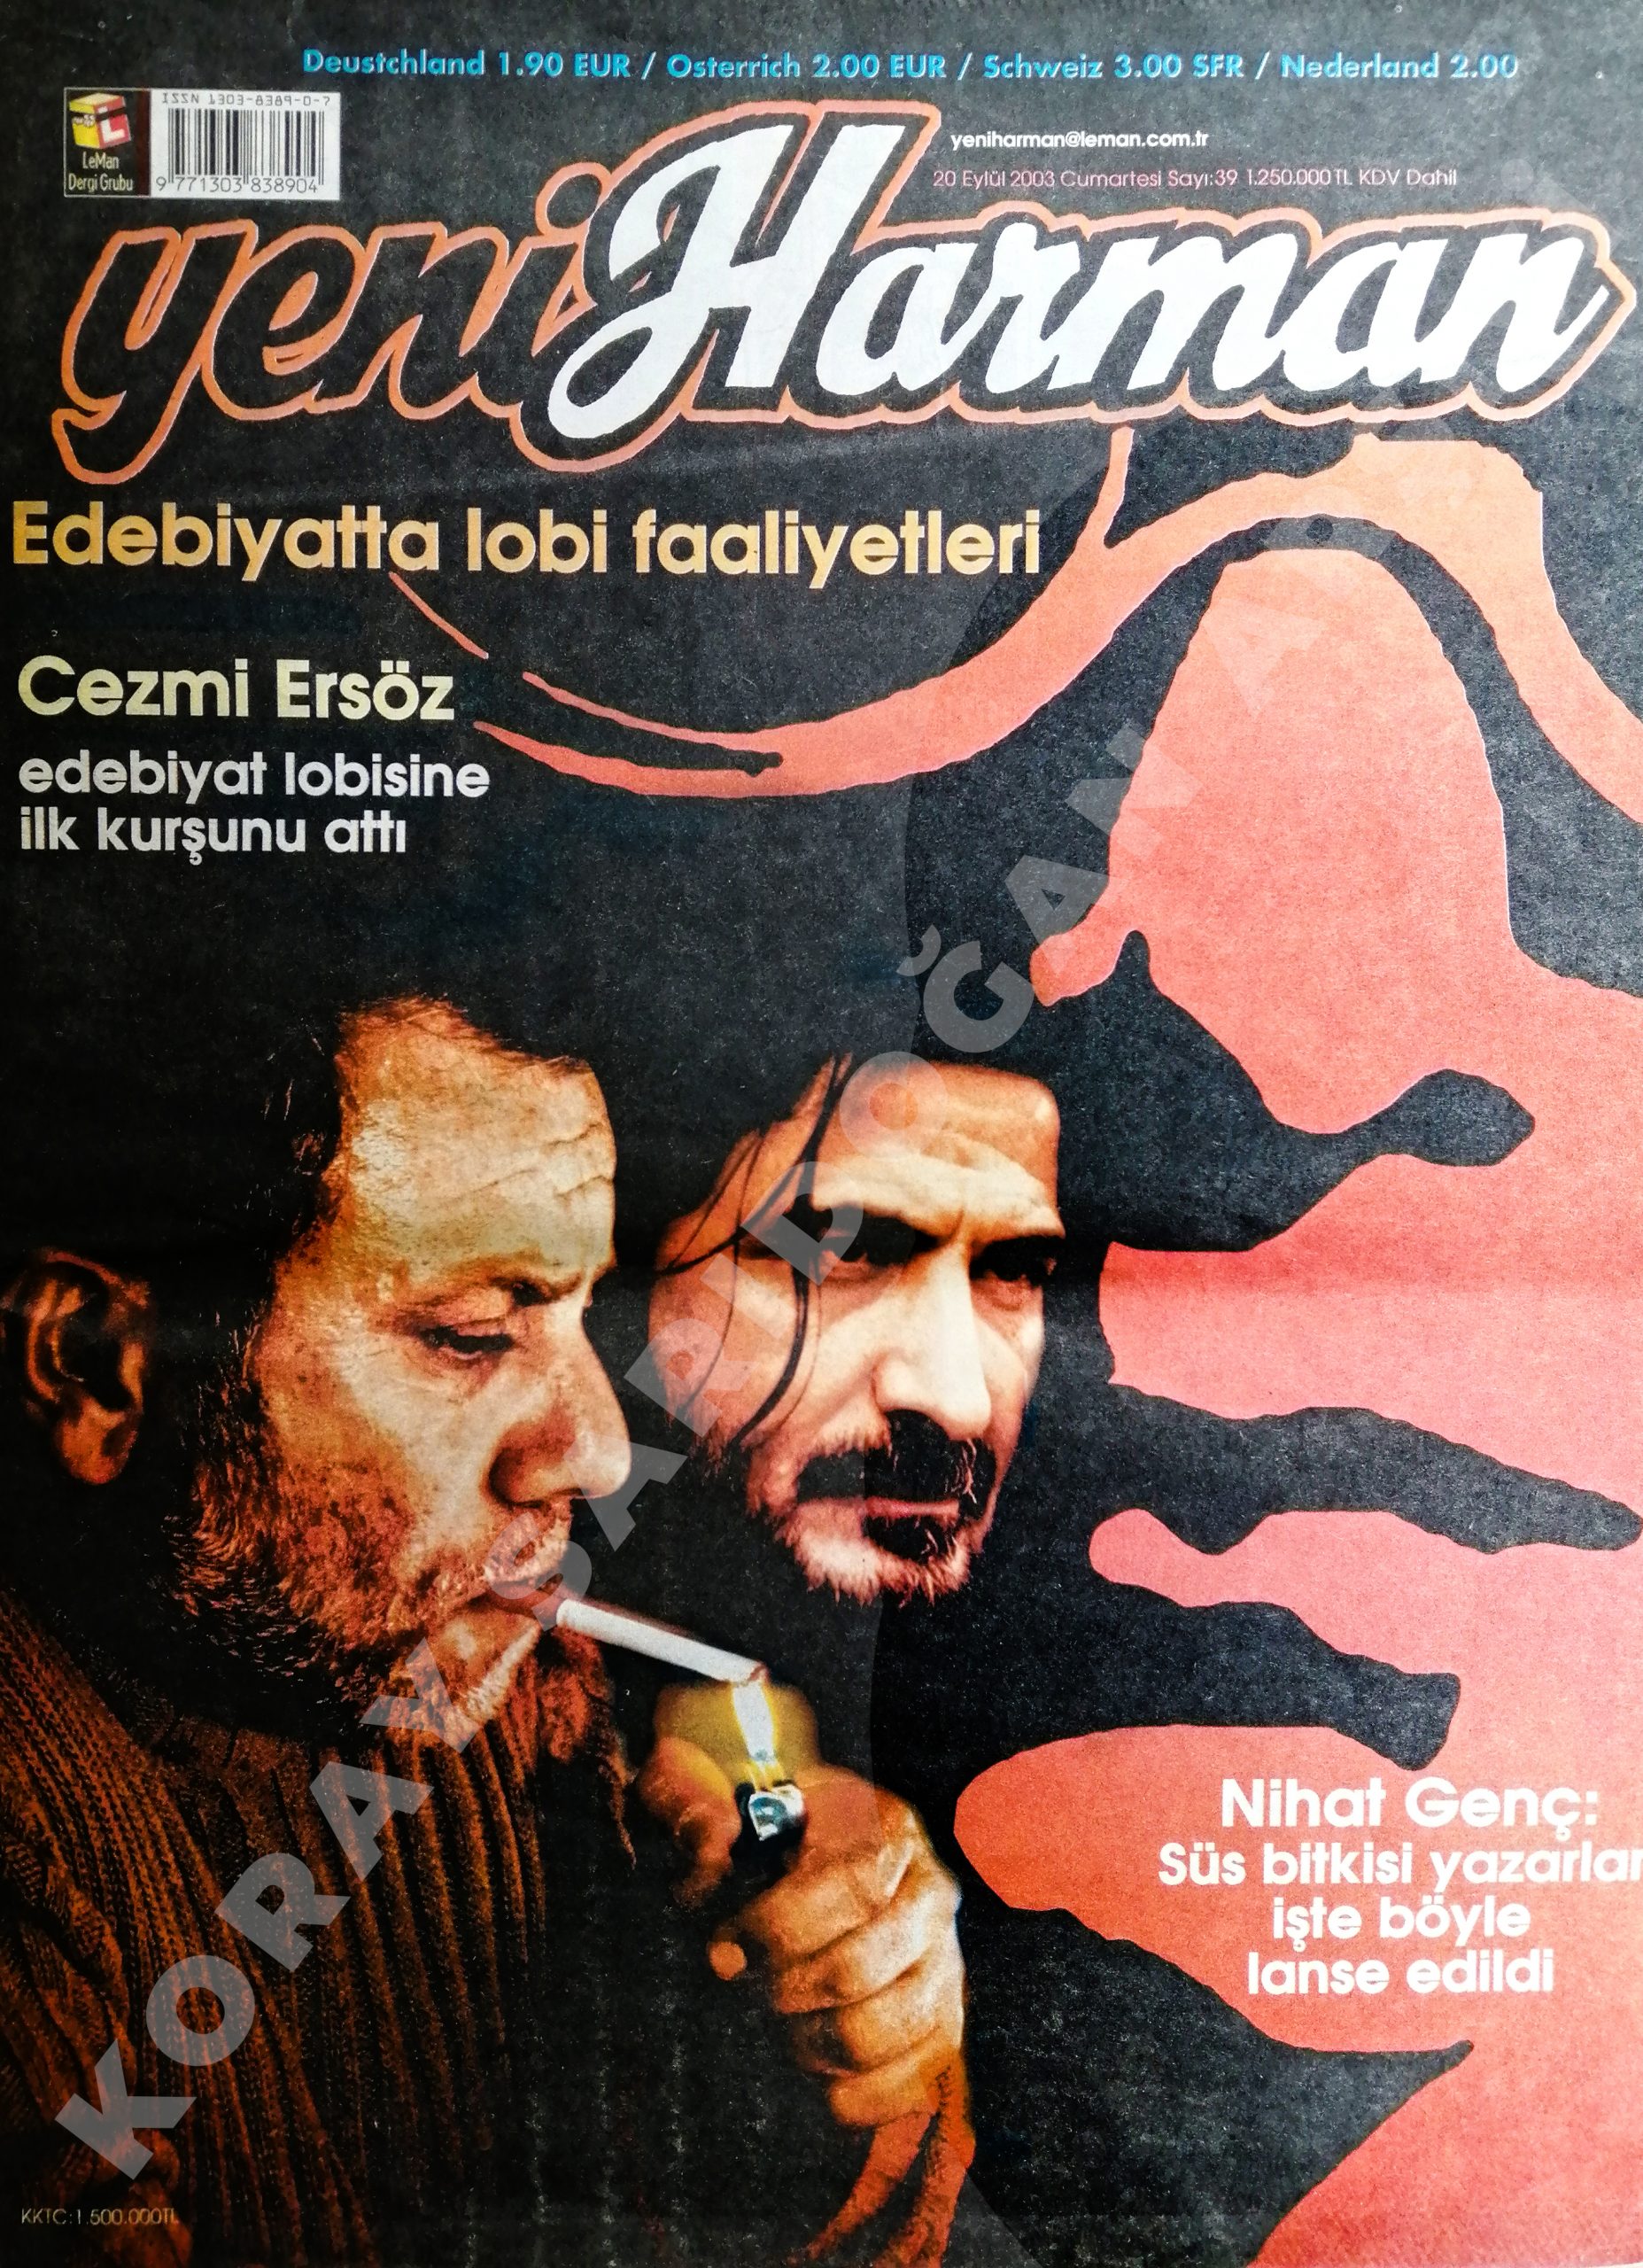 "Edebiyatta lobi faaliyetleri", Nihat Genç ve Cezmi Ersöz'ün çok konuşulacak röportajlarına yer veren Yeni Harman'ın 20 Eylül 2003 sayısı.